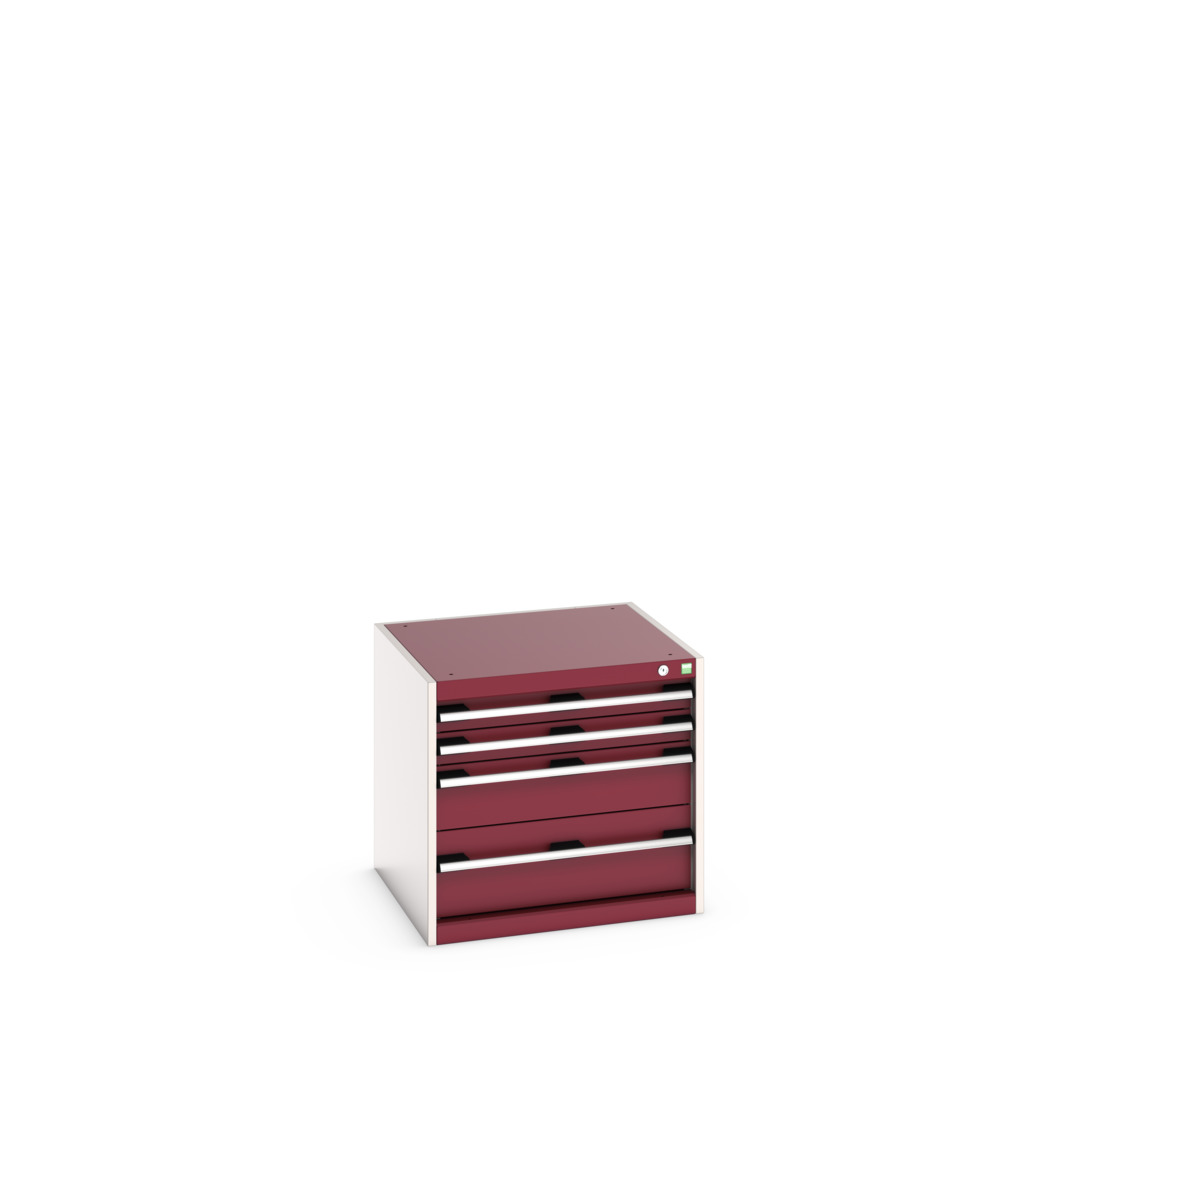 40019015.24V - cubio drawer cabinet